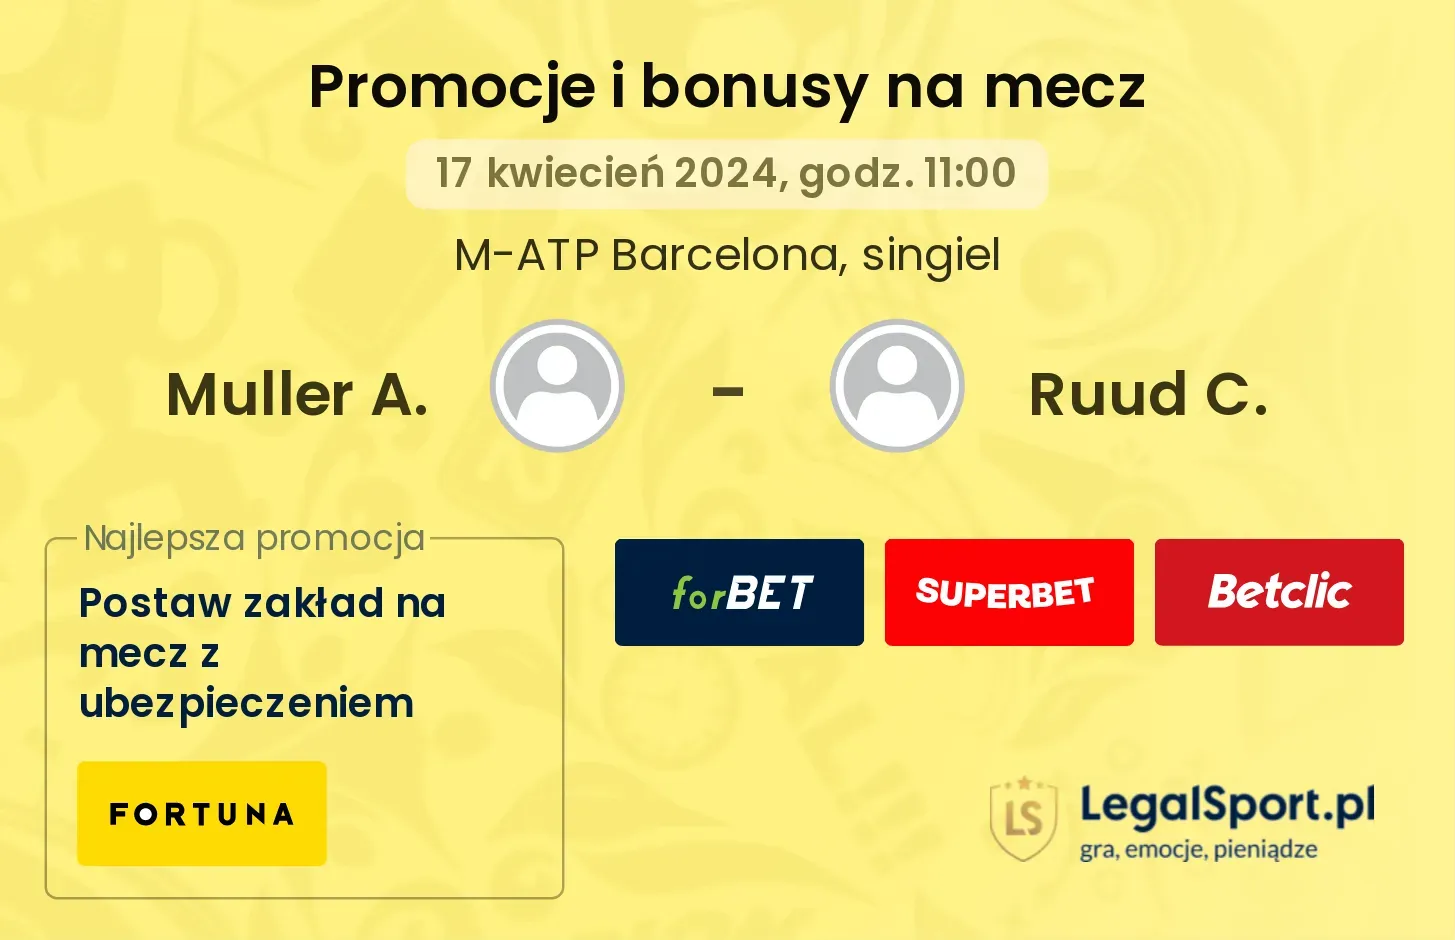 Muller A. - Ruud C. promocje bonusy na mecz